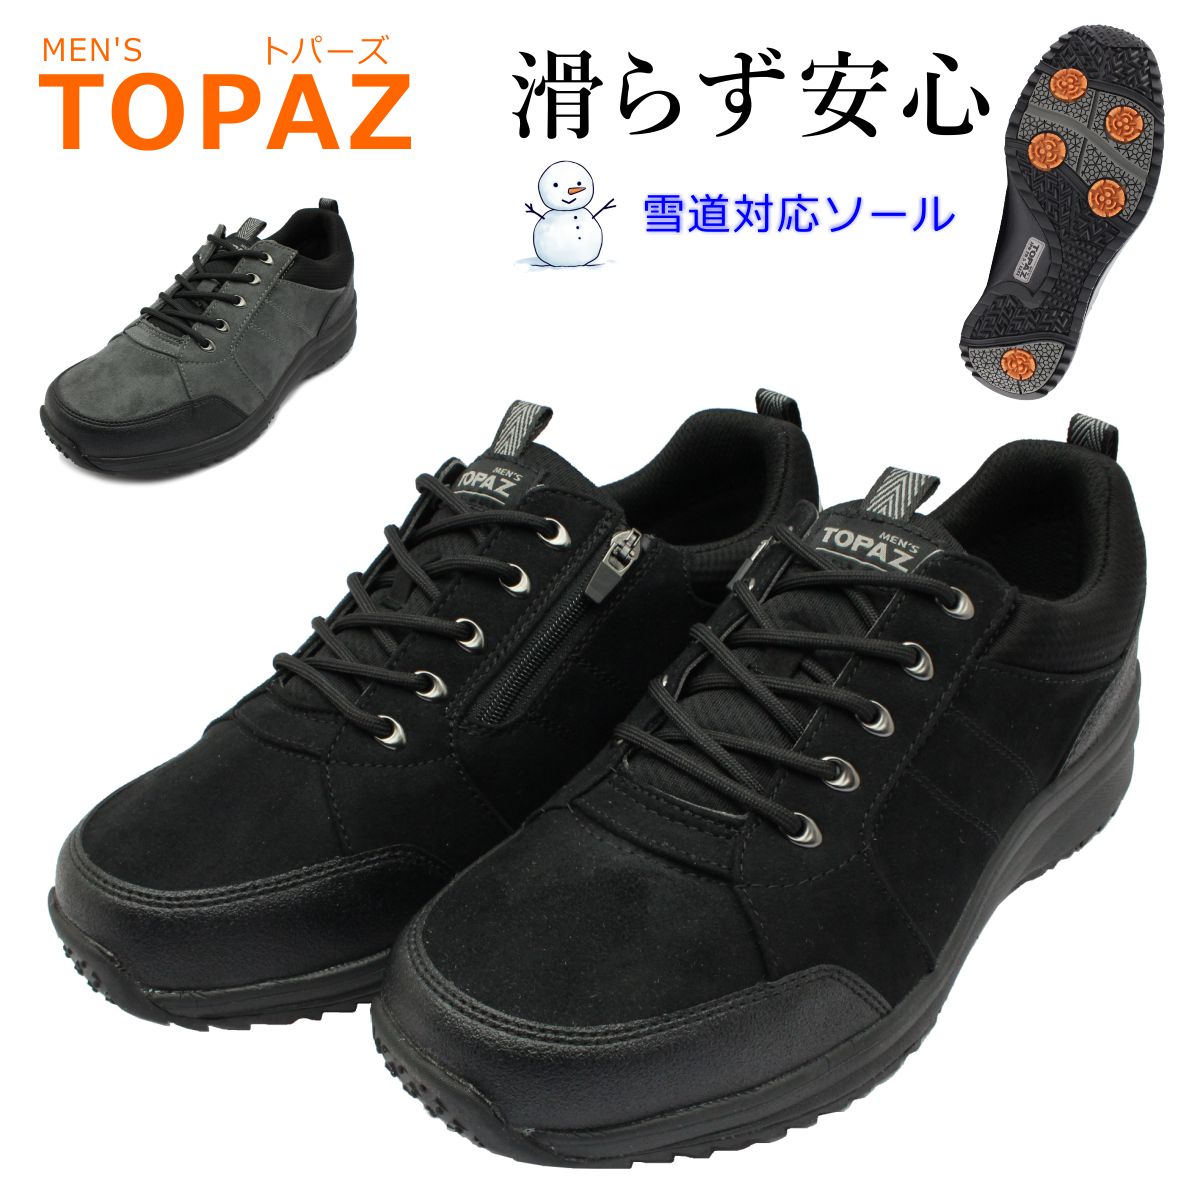 トパーズ TOPAZA メンズ スノーシューズ カジュアル MTZ-0145 145 防水 防滑 4E幅広 紳士靴 世界長 :top0145:ミッキー靴店  通販 